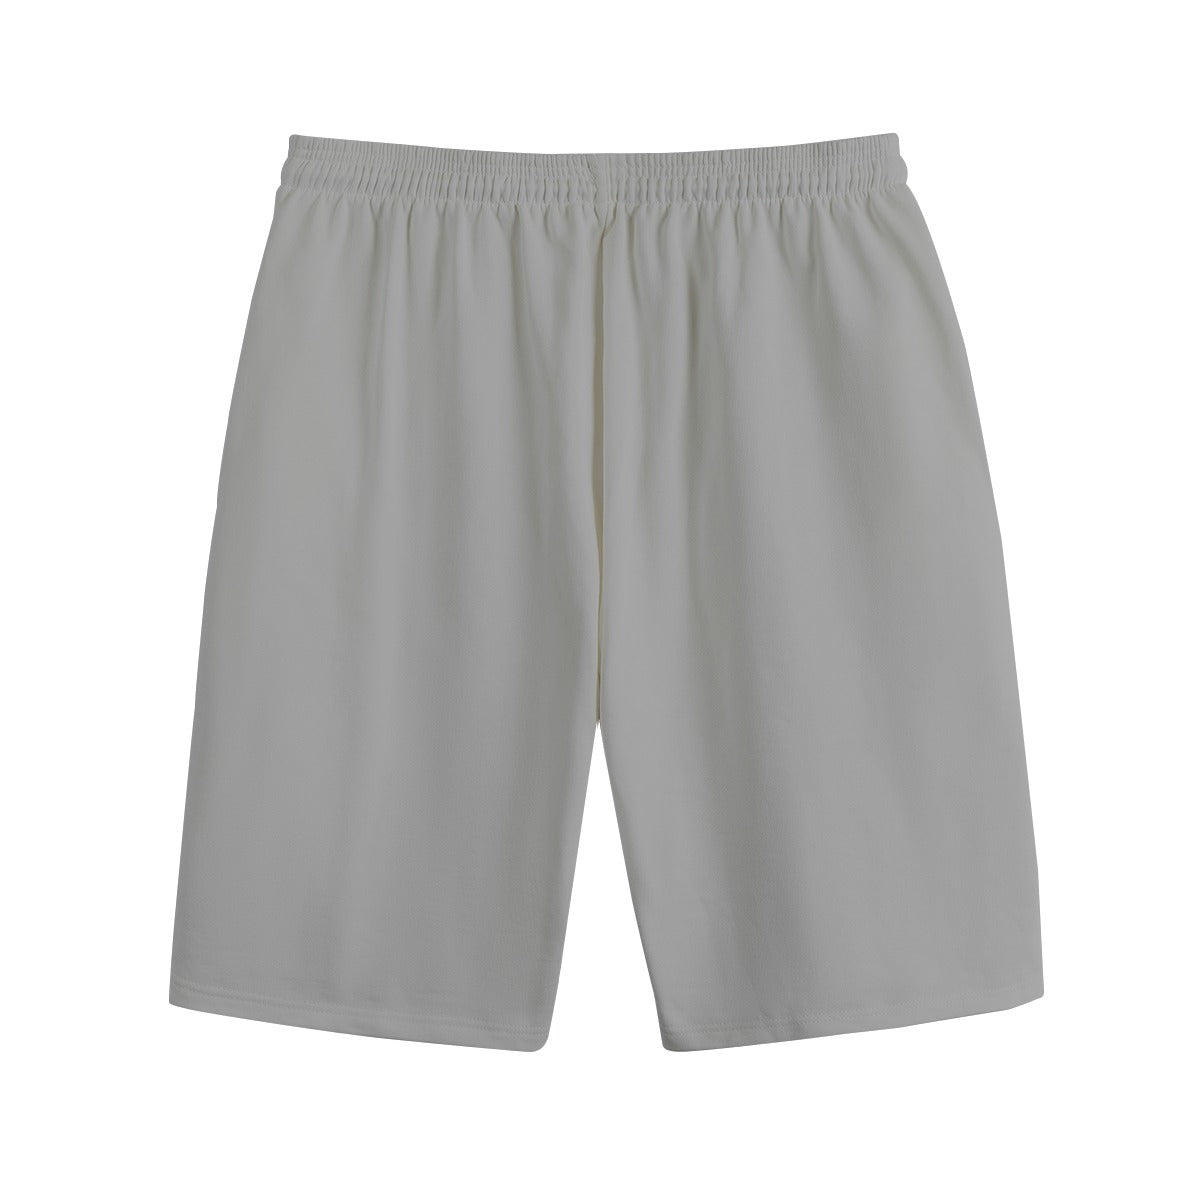 AM&IS Men's Gray Shorts | 100% Cotton